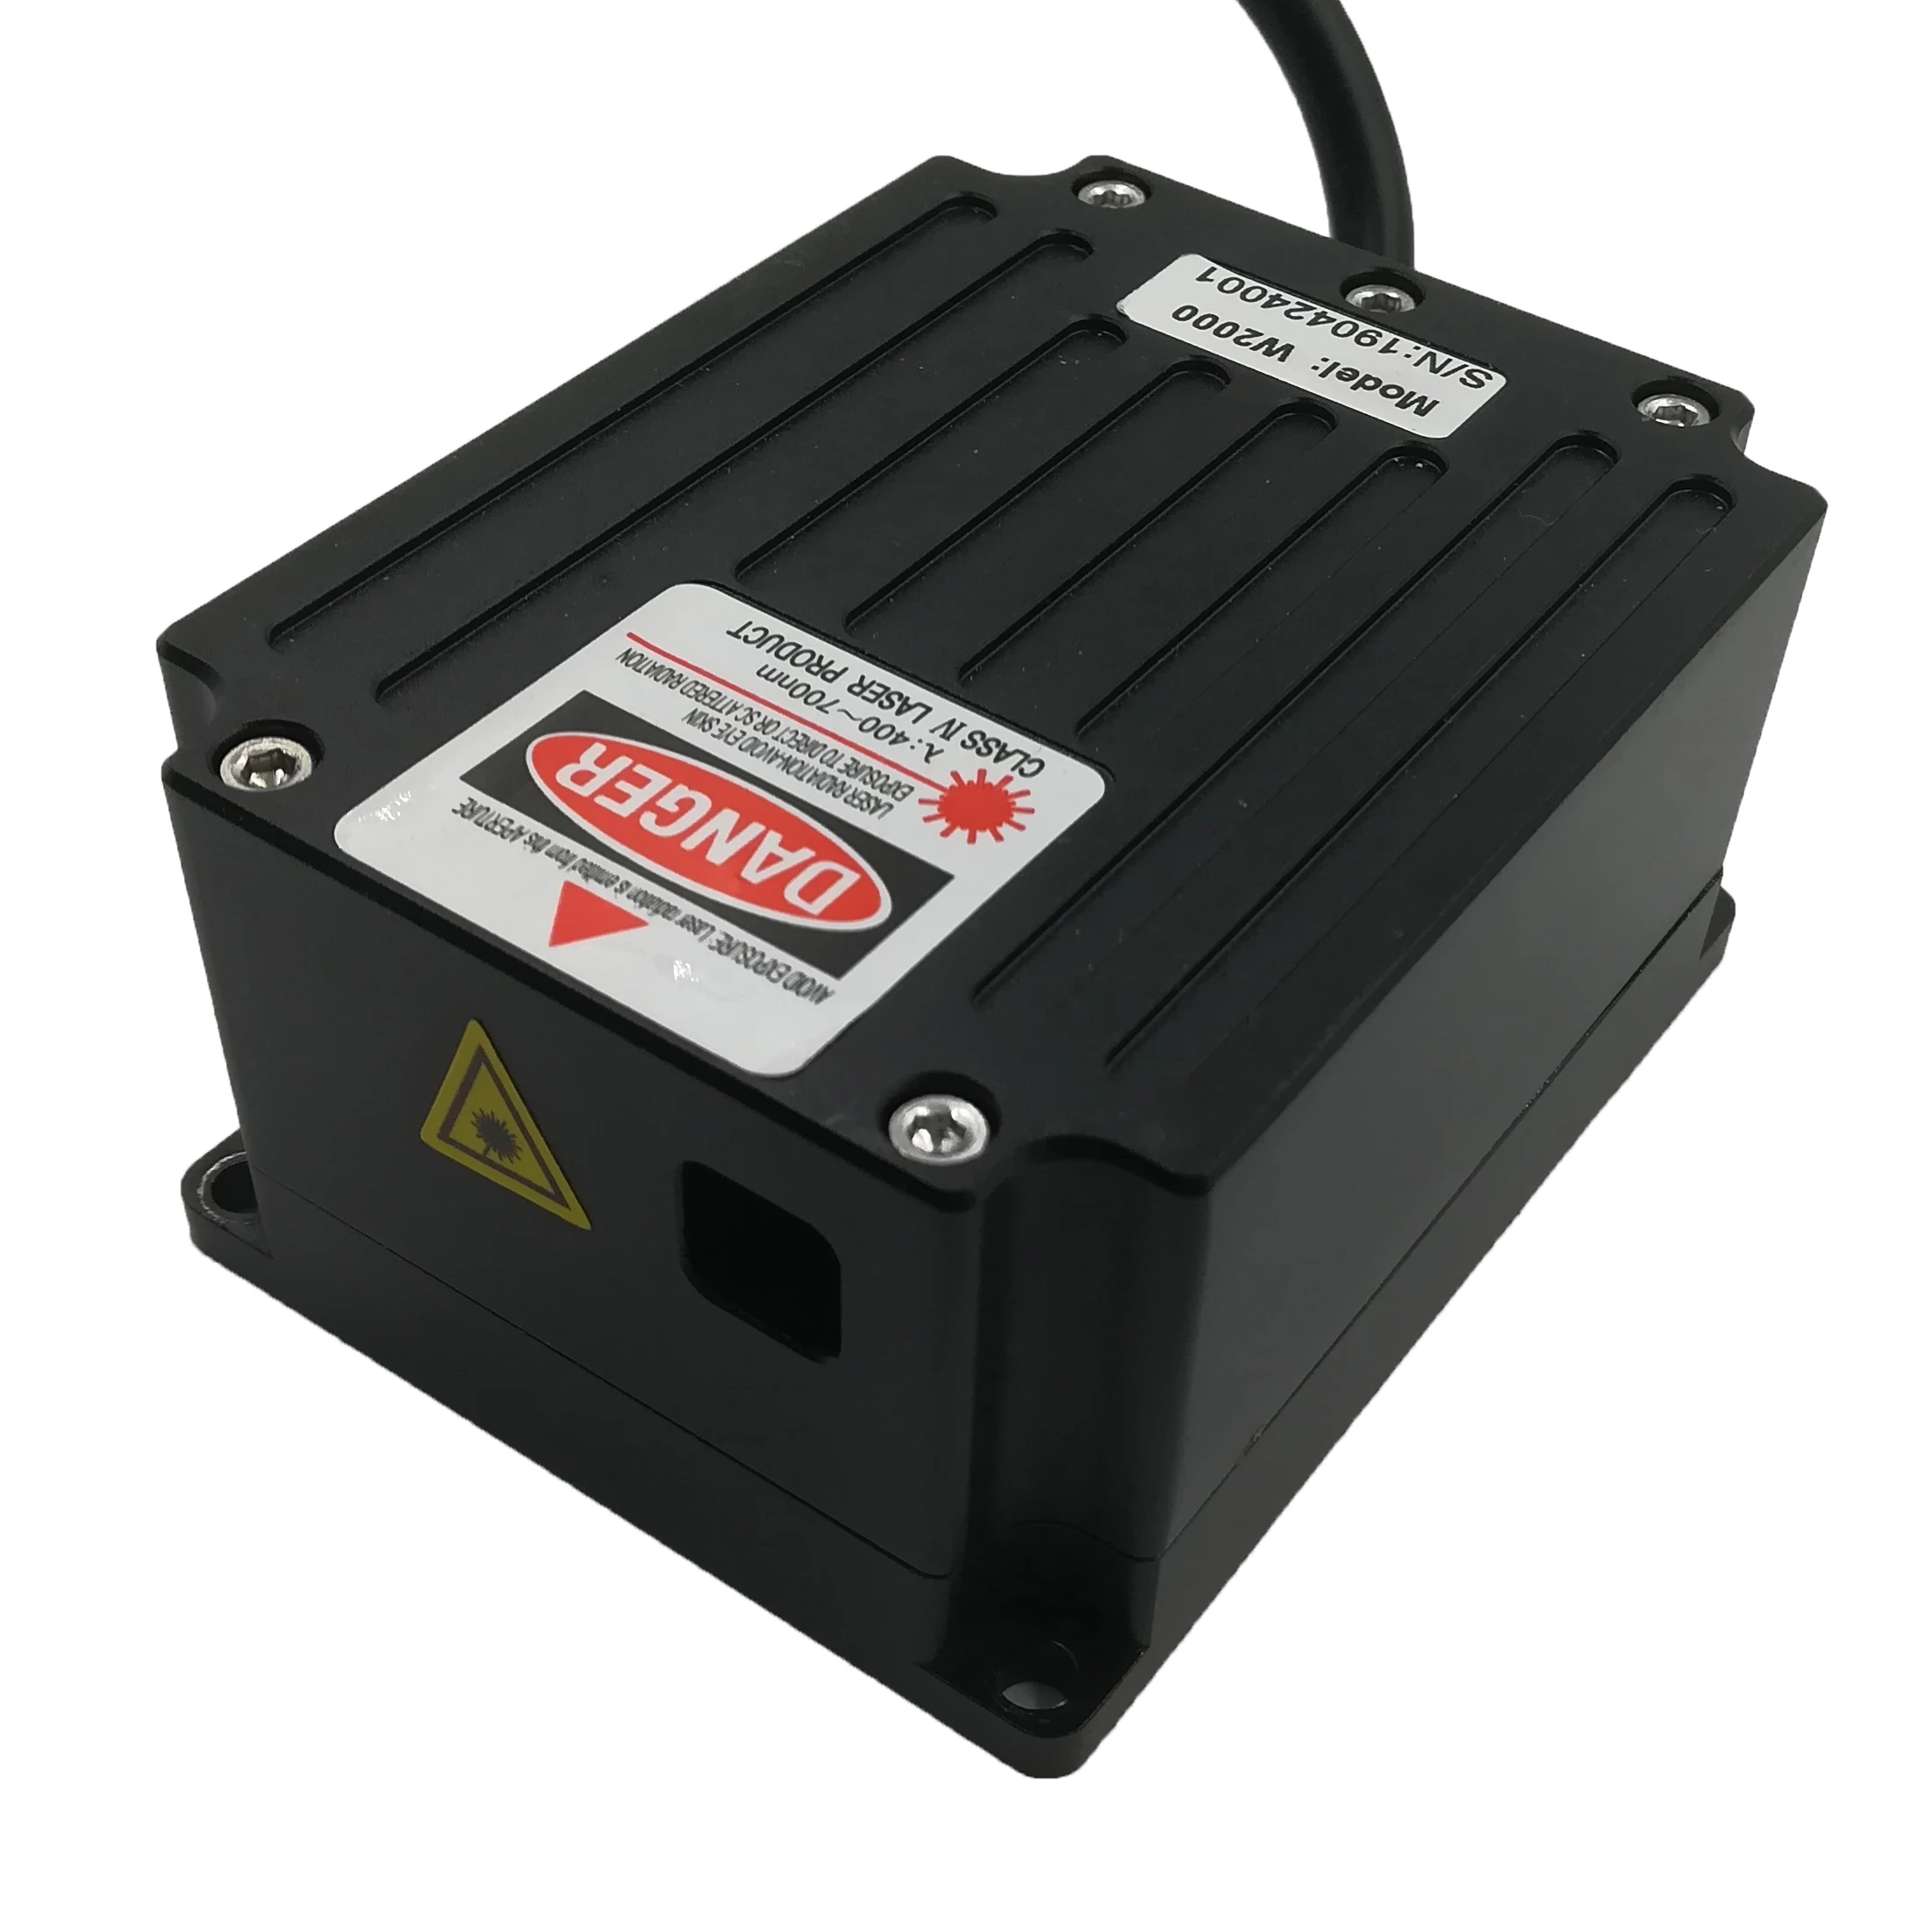 Ilda DMX RGB лазерный светильник мини 5 Вт RGB анимационный проектор, лазерный текст проектор, программируемый лазер 5 Вт RGB лазерный светильник ing